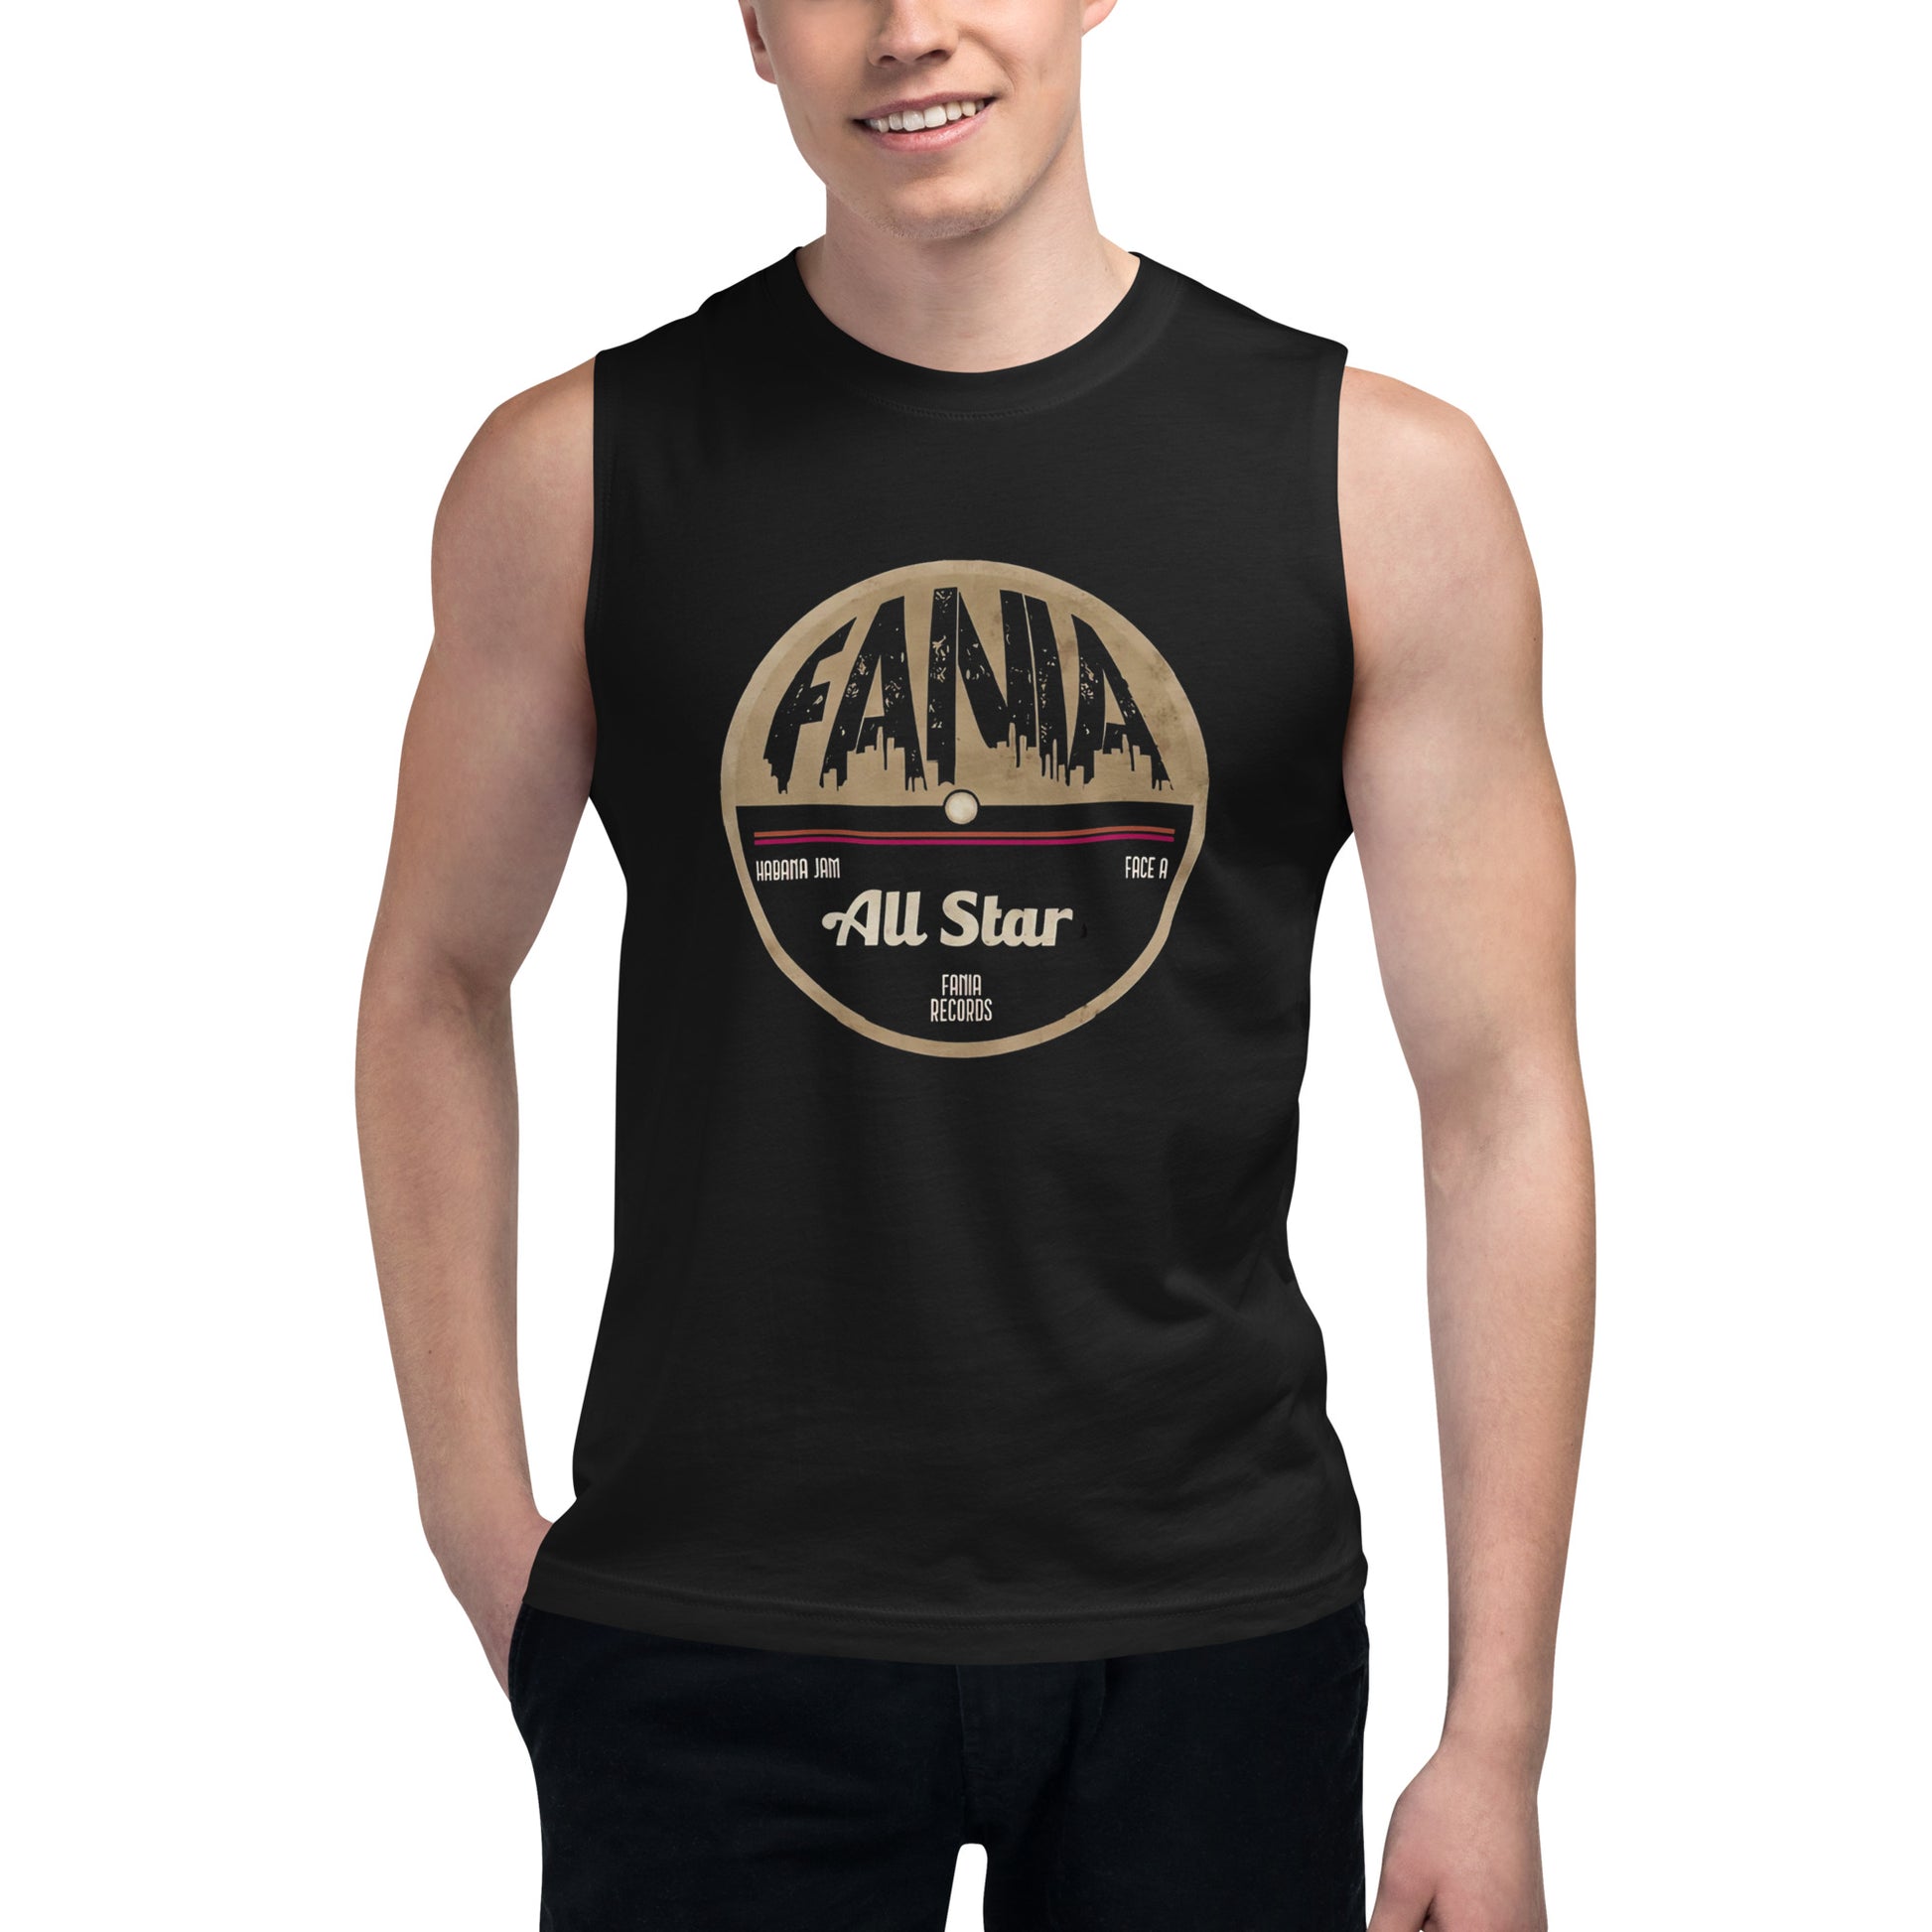 Camiseta sin mangas Fania All Star, Descubre calidad excepcional y estampados duraderos. Encuentra estilo y orgullo en cada prenda. Compra en LOSMIOS